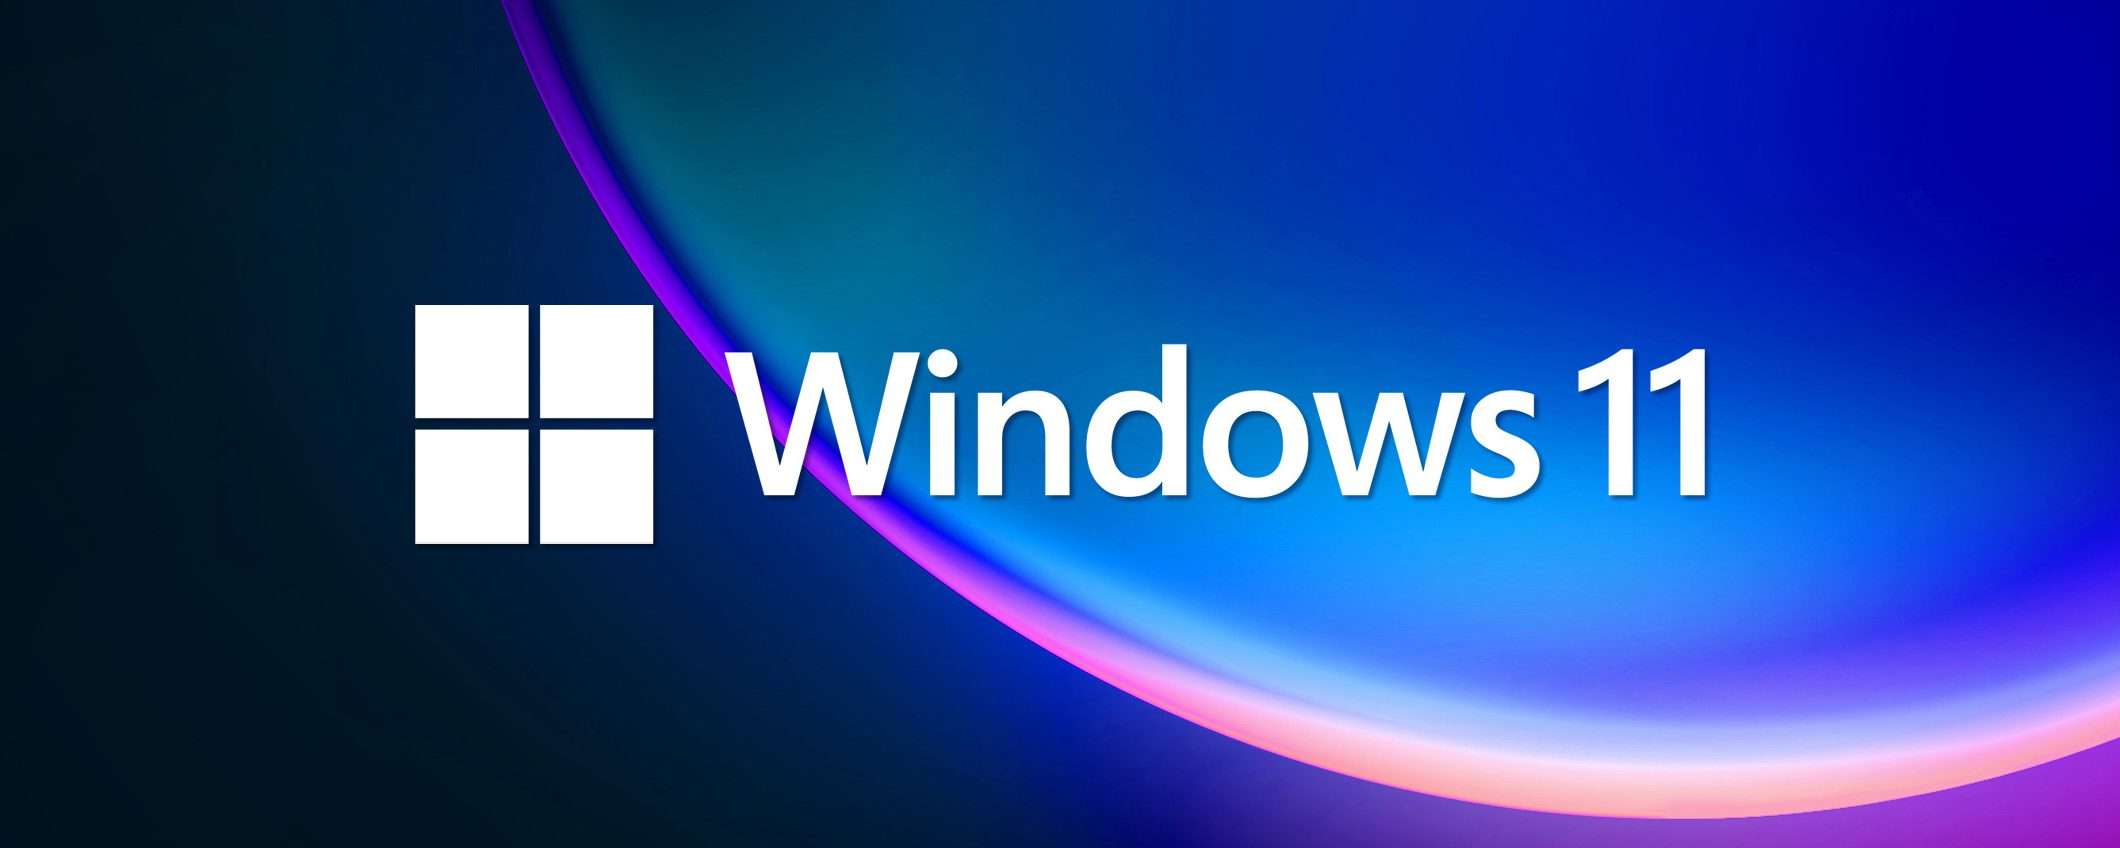 Windows 11: Microsoft rilascia due Preview Build